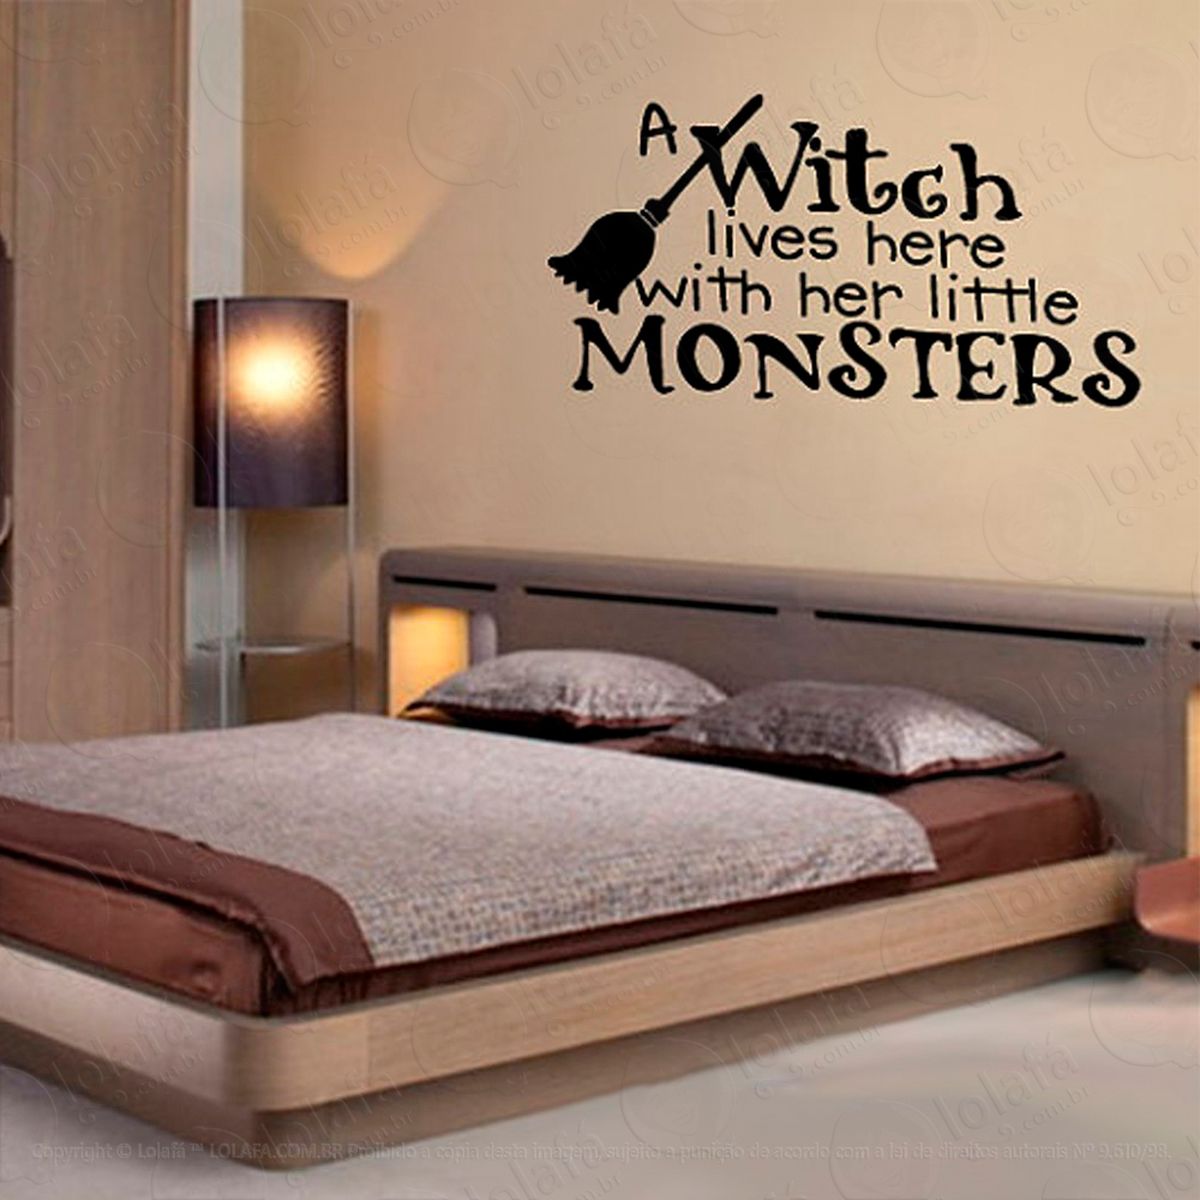 frase witch adesivo de parede decorativo para casa, sala, quarto e vidro - mod:124